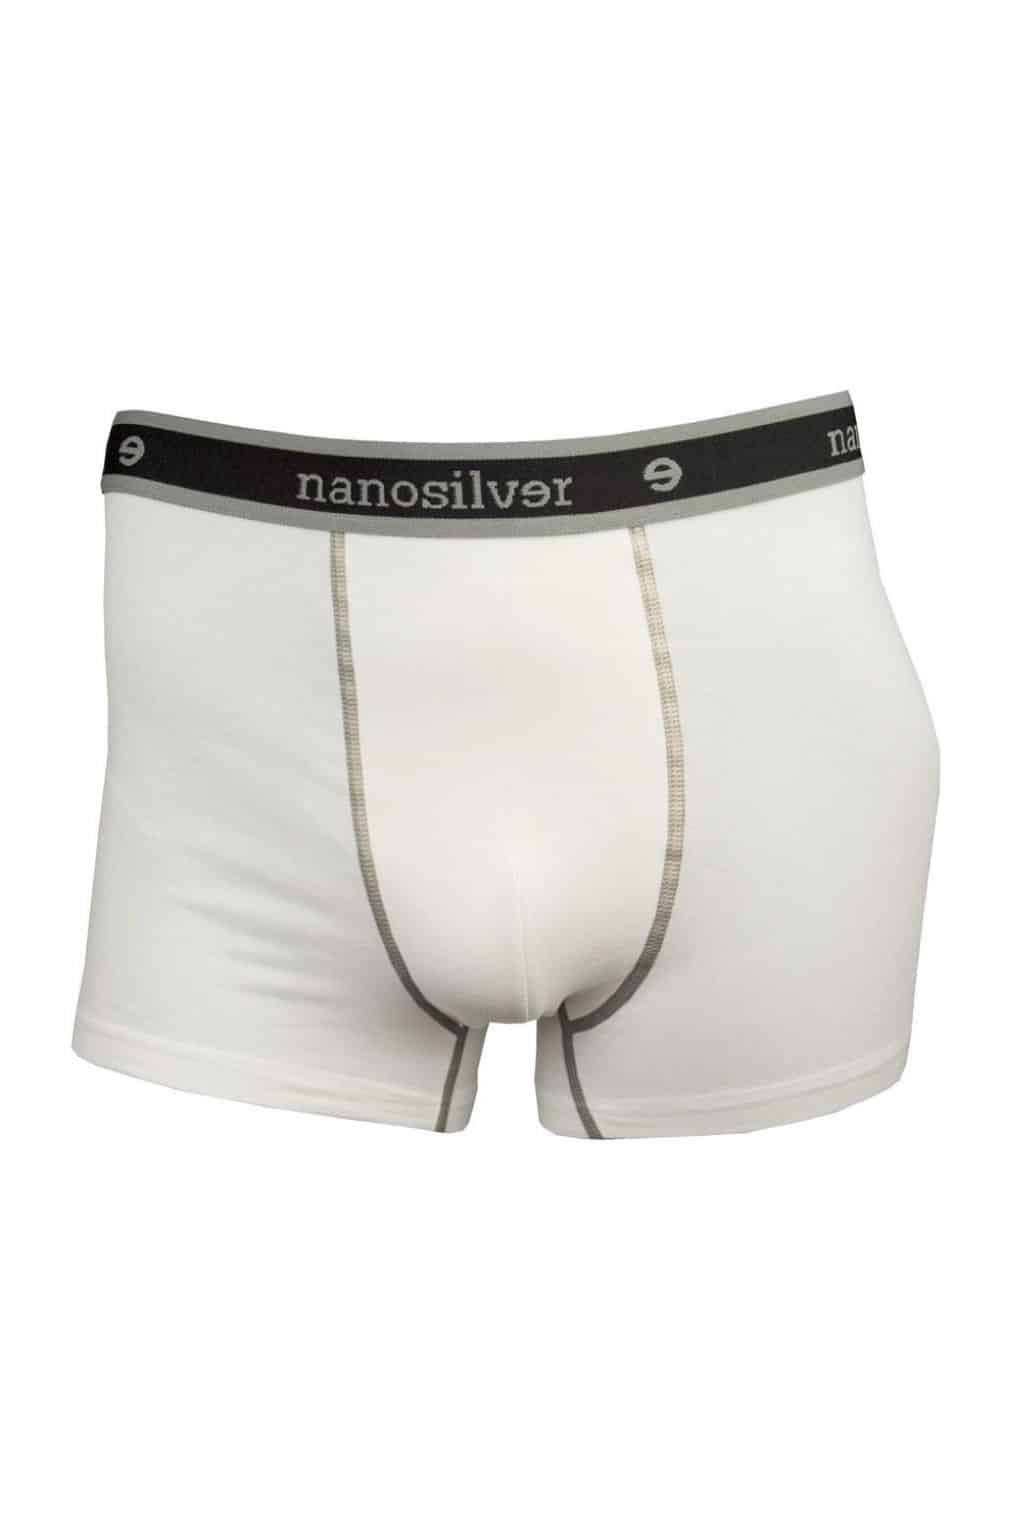 nanosilver® Nano boxerky s gumou nanosilver bez zadního švu bílé Velikost: XL